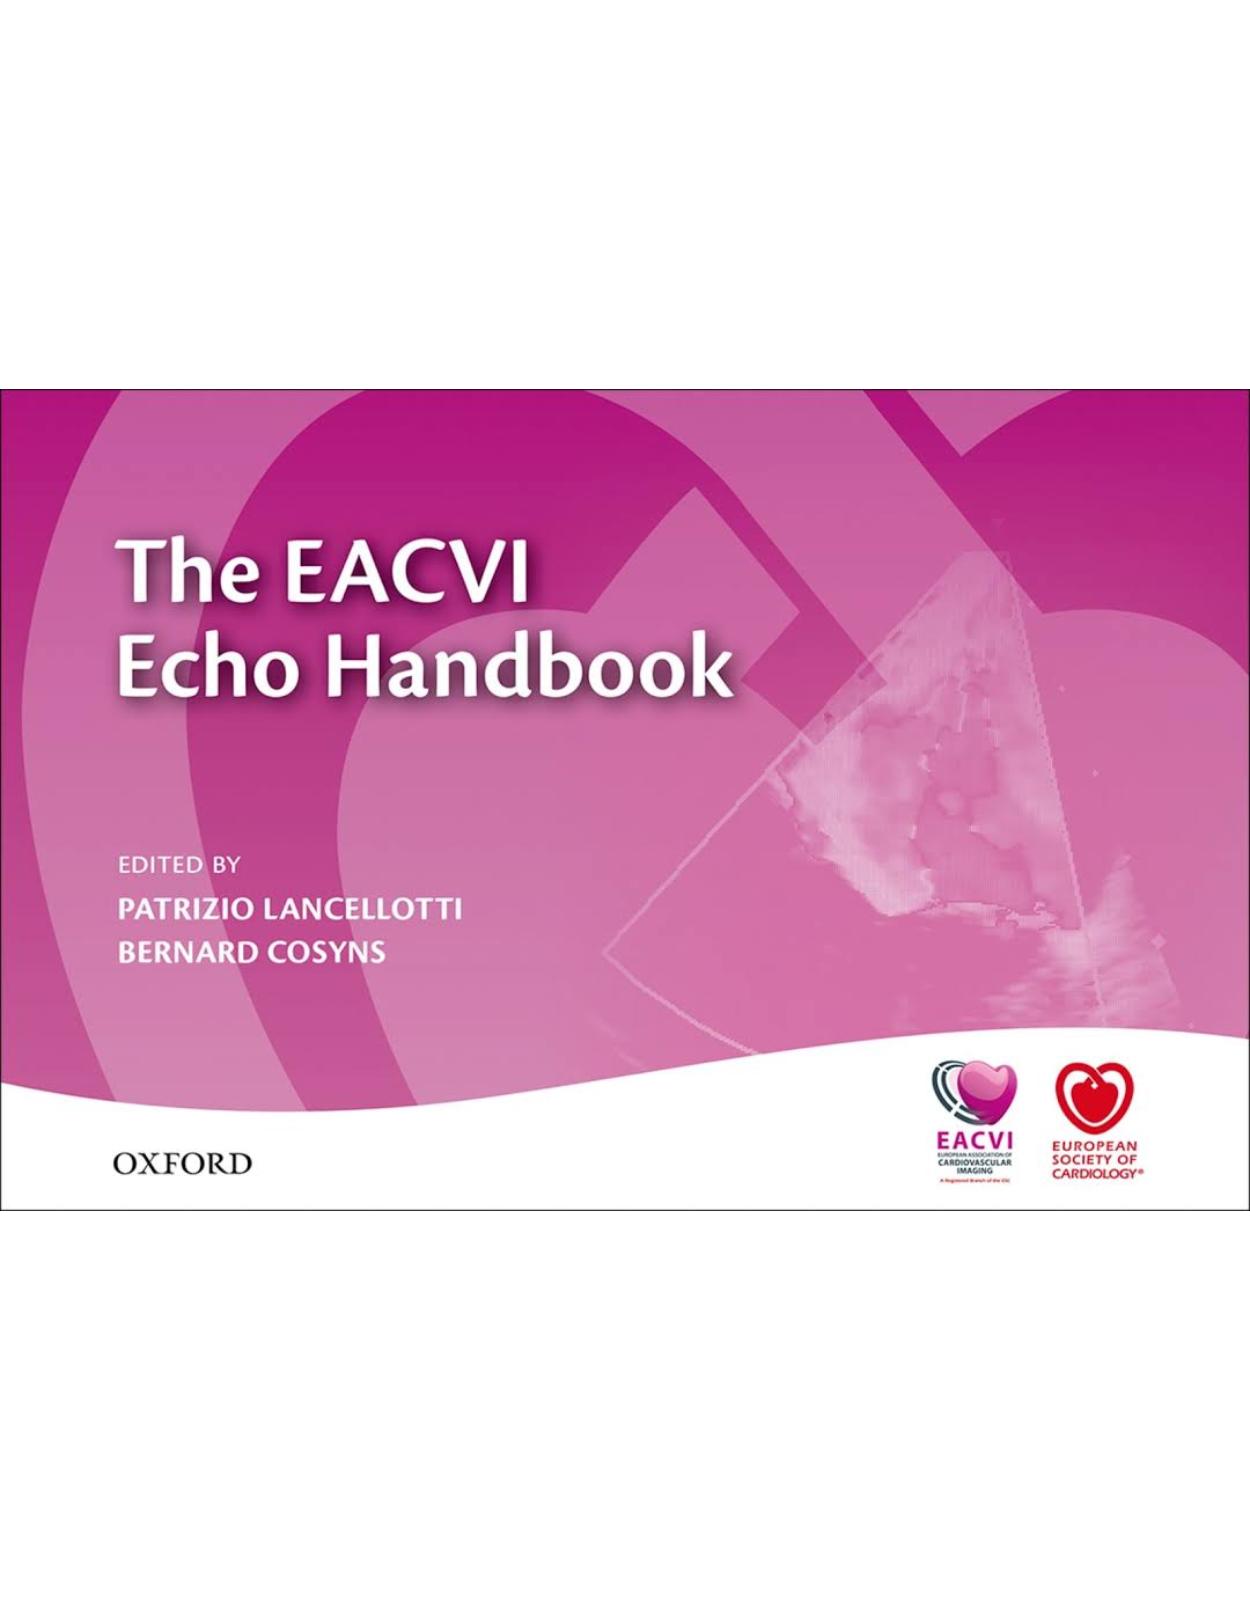 The EACVI Echo Handbook